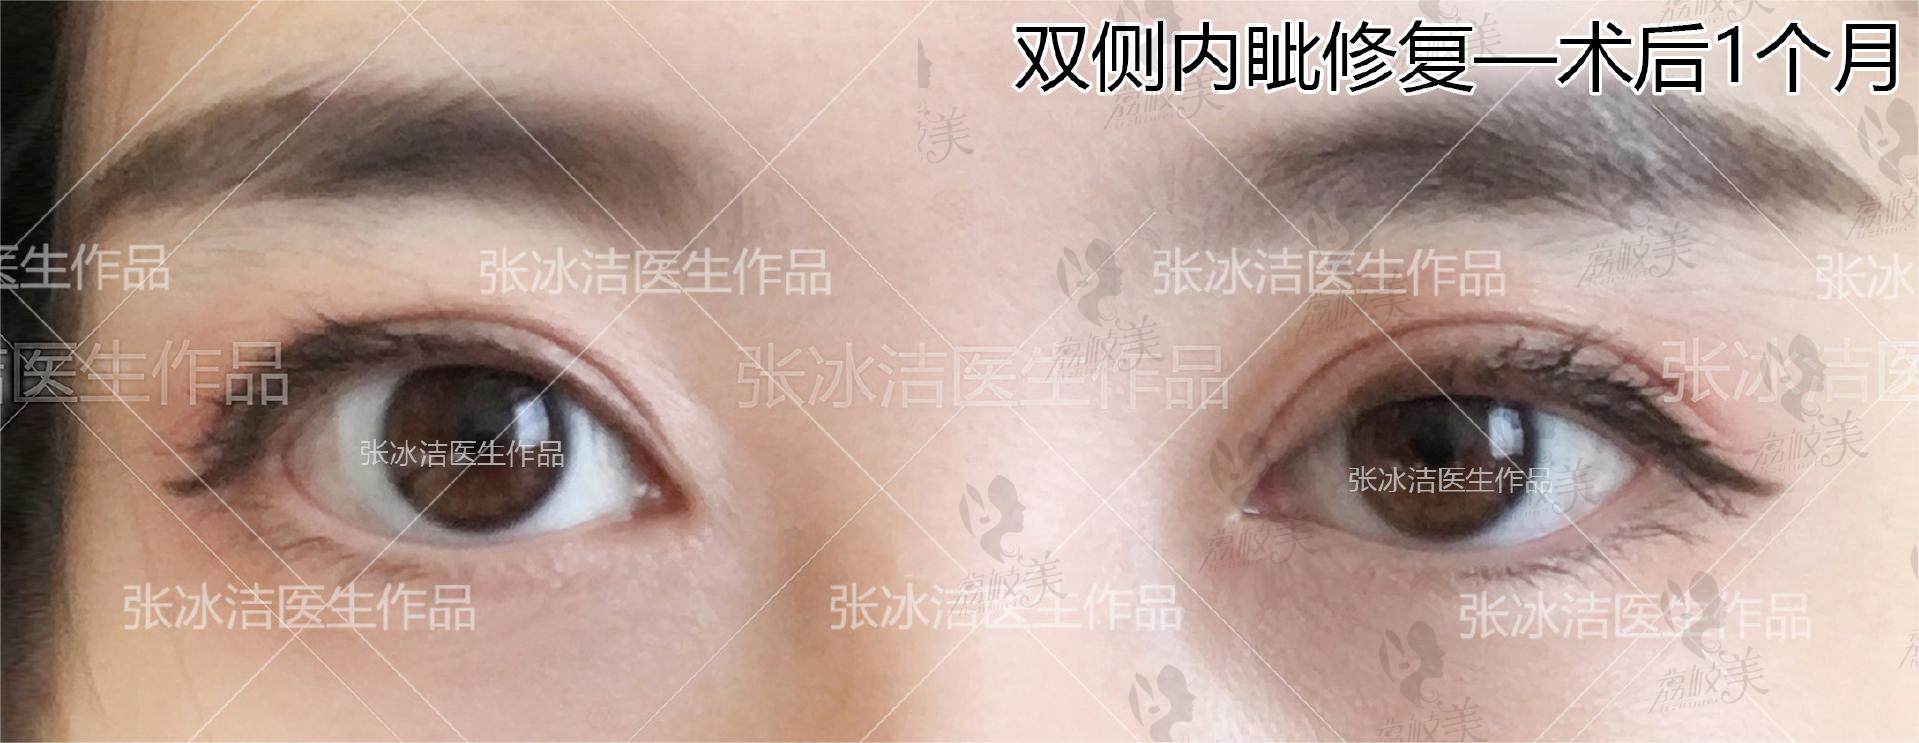 北京张冰洁修复双眼皮技术贼好